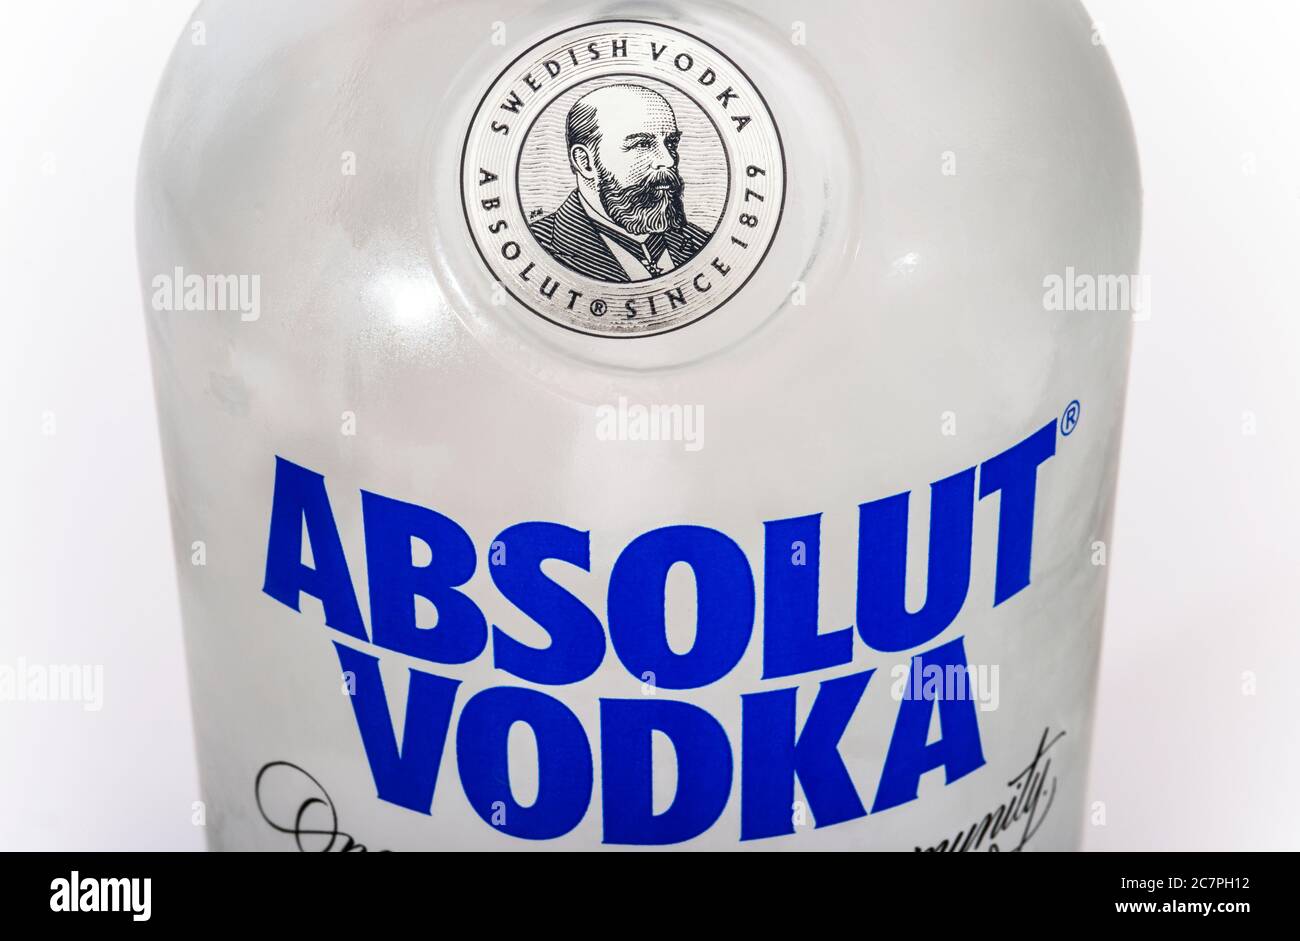 Absolut vodka Stock Photo